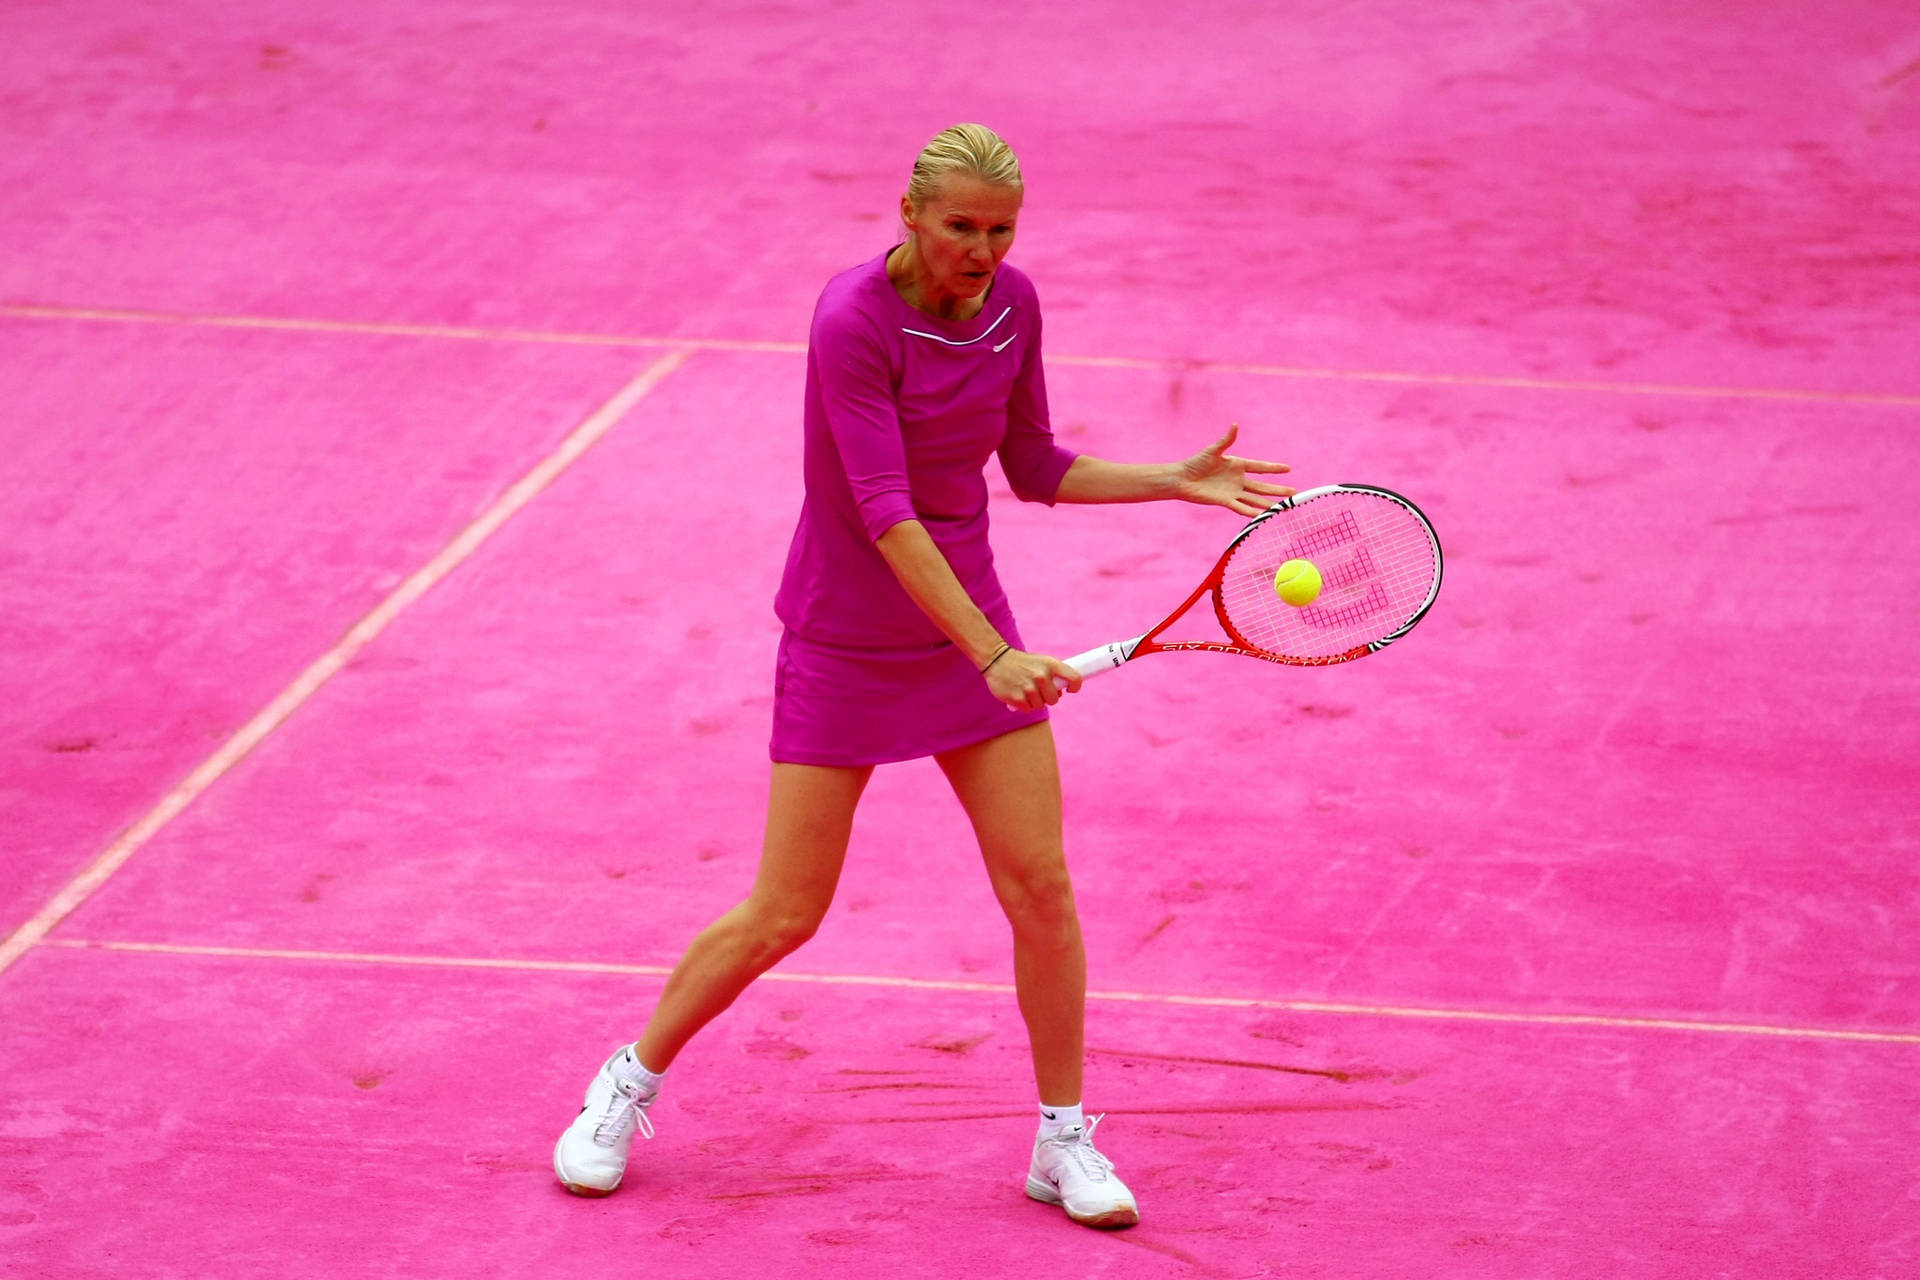 Jana Novotna playing Tennis on a Pink Court Wallpaper